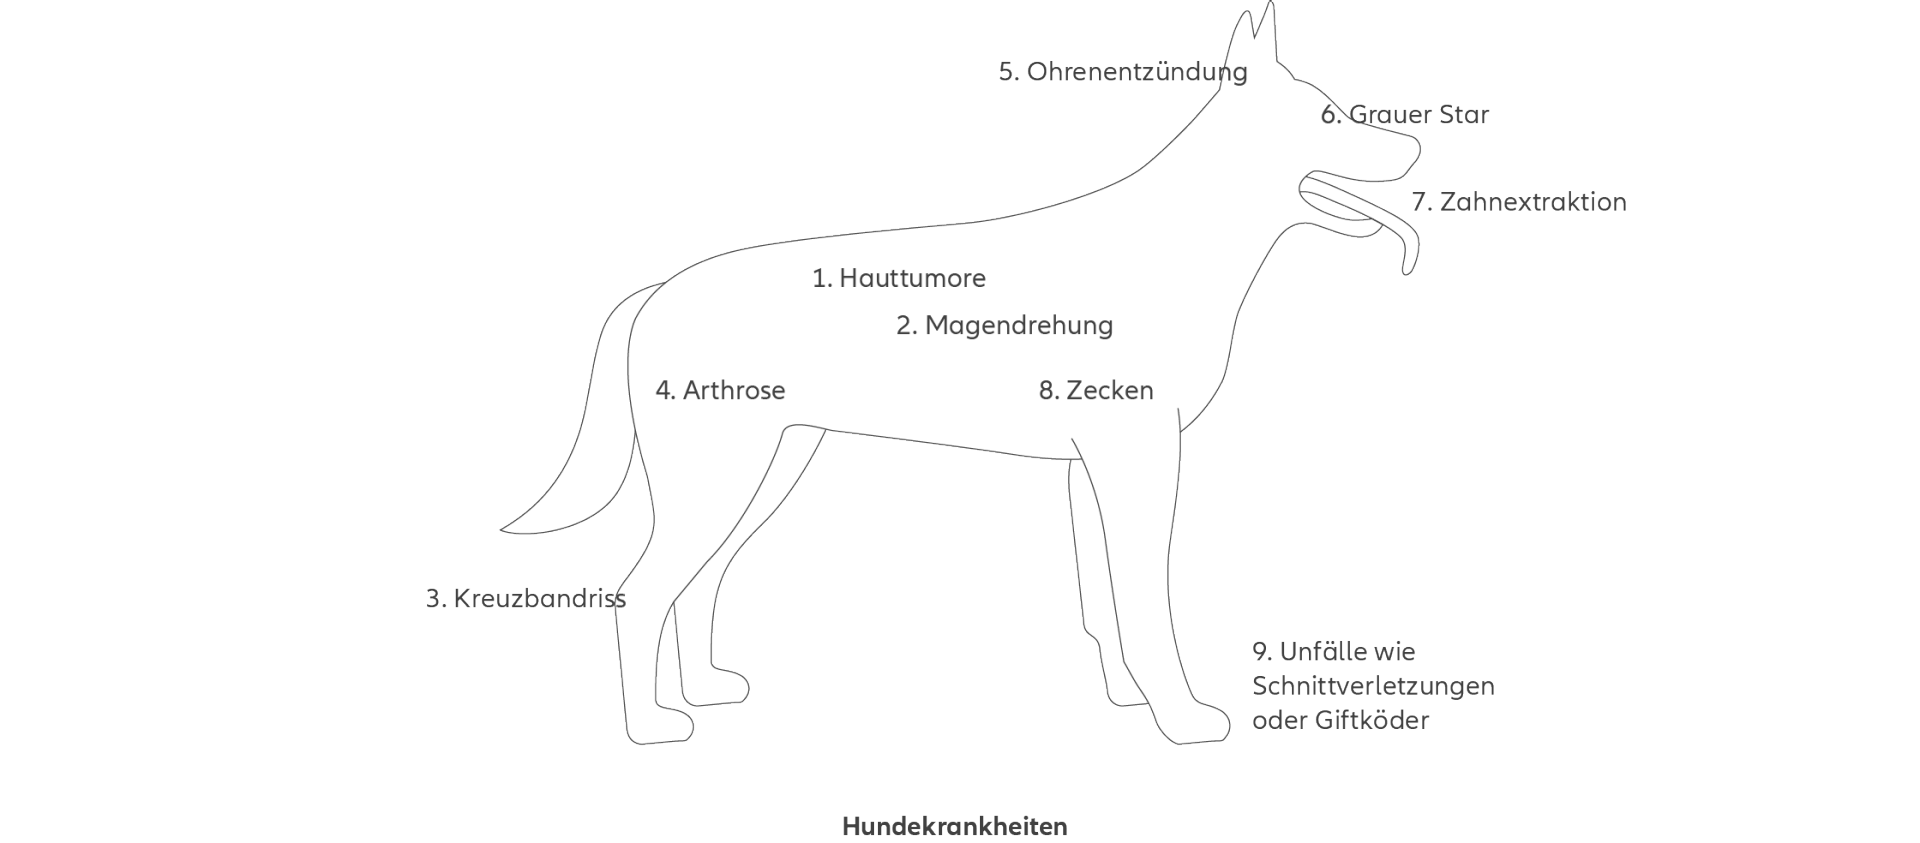 Abbildung zu einem Hund mit Kennzeichnung der häufigsten Krankheiten